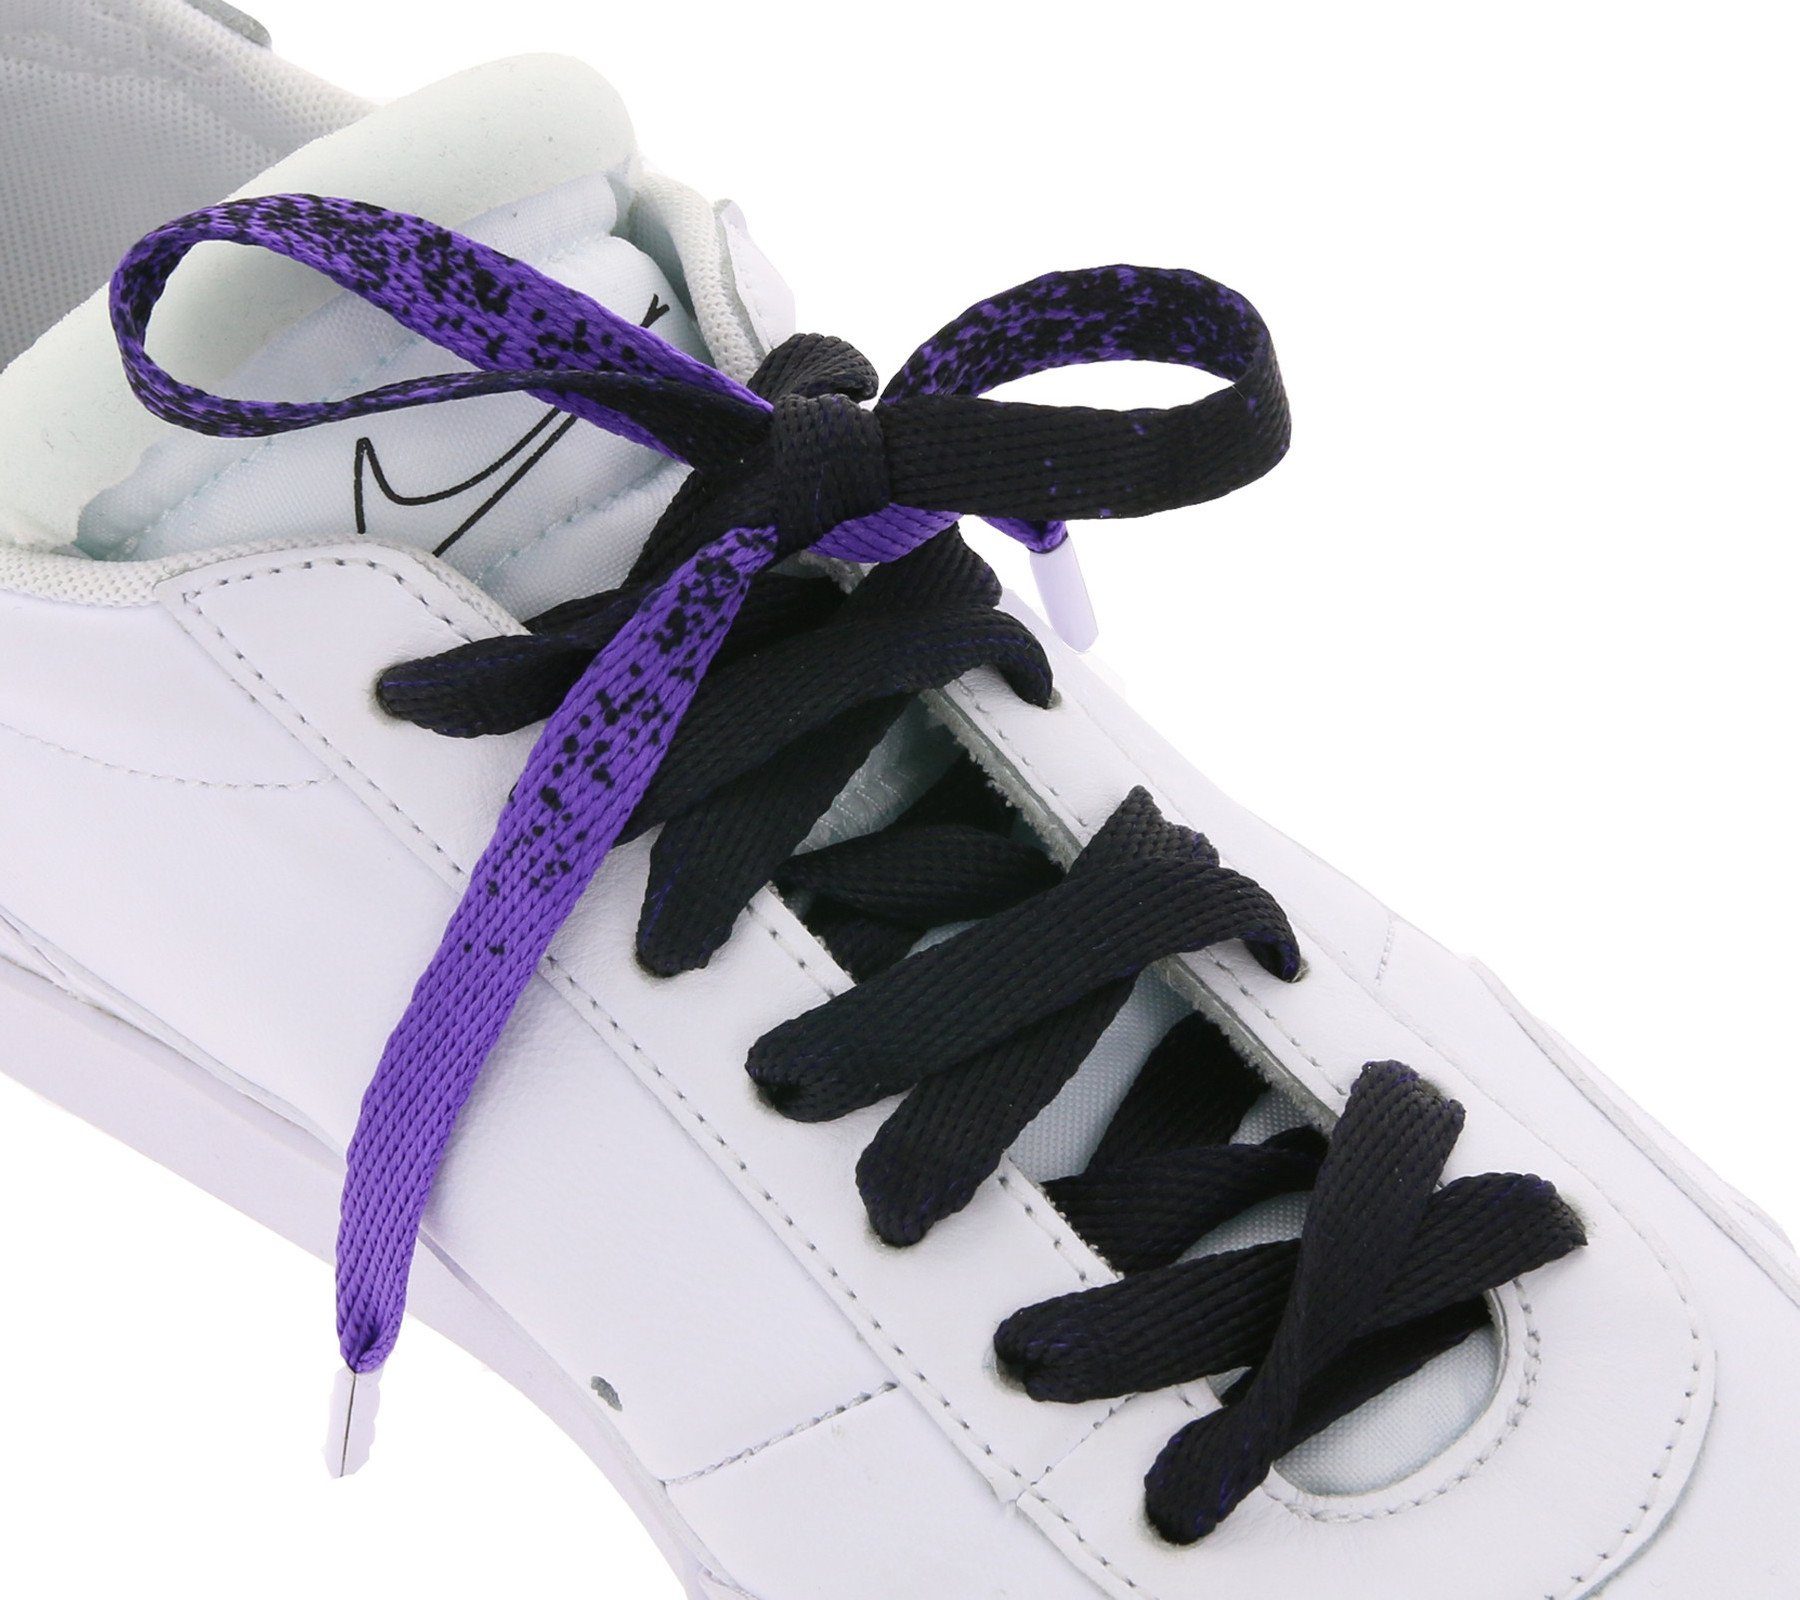 Tubelaces Schnürsenkel TubeLaces Schuhe Schnürsenkel trendige Schnürbänder Schuhbänder Violett/Schwarz